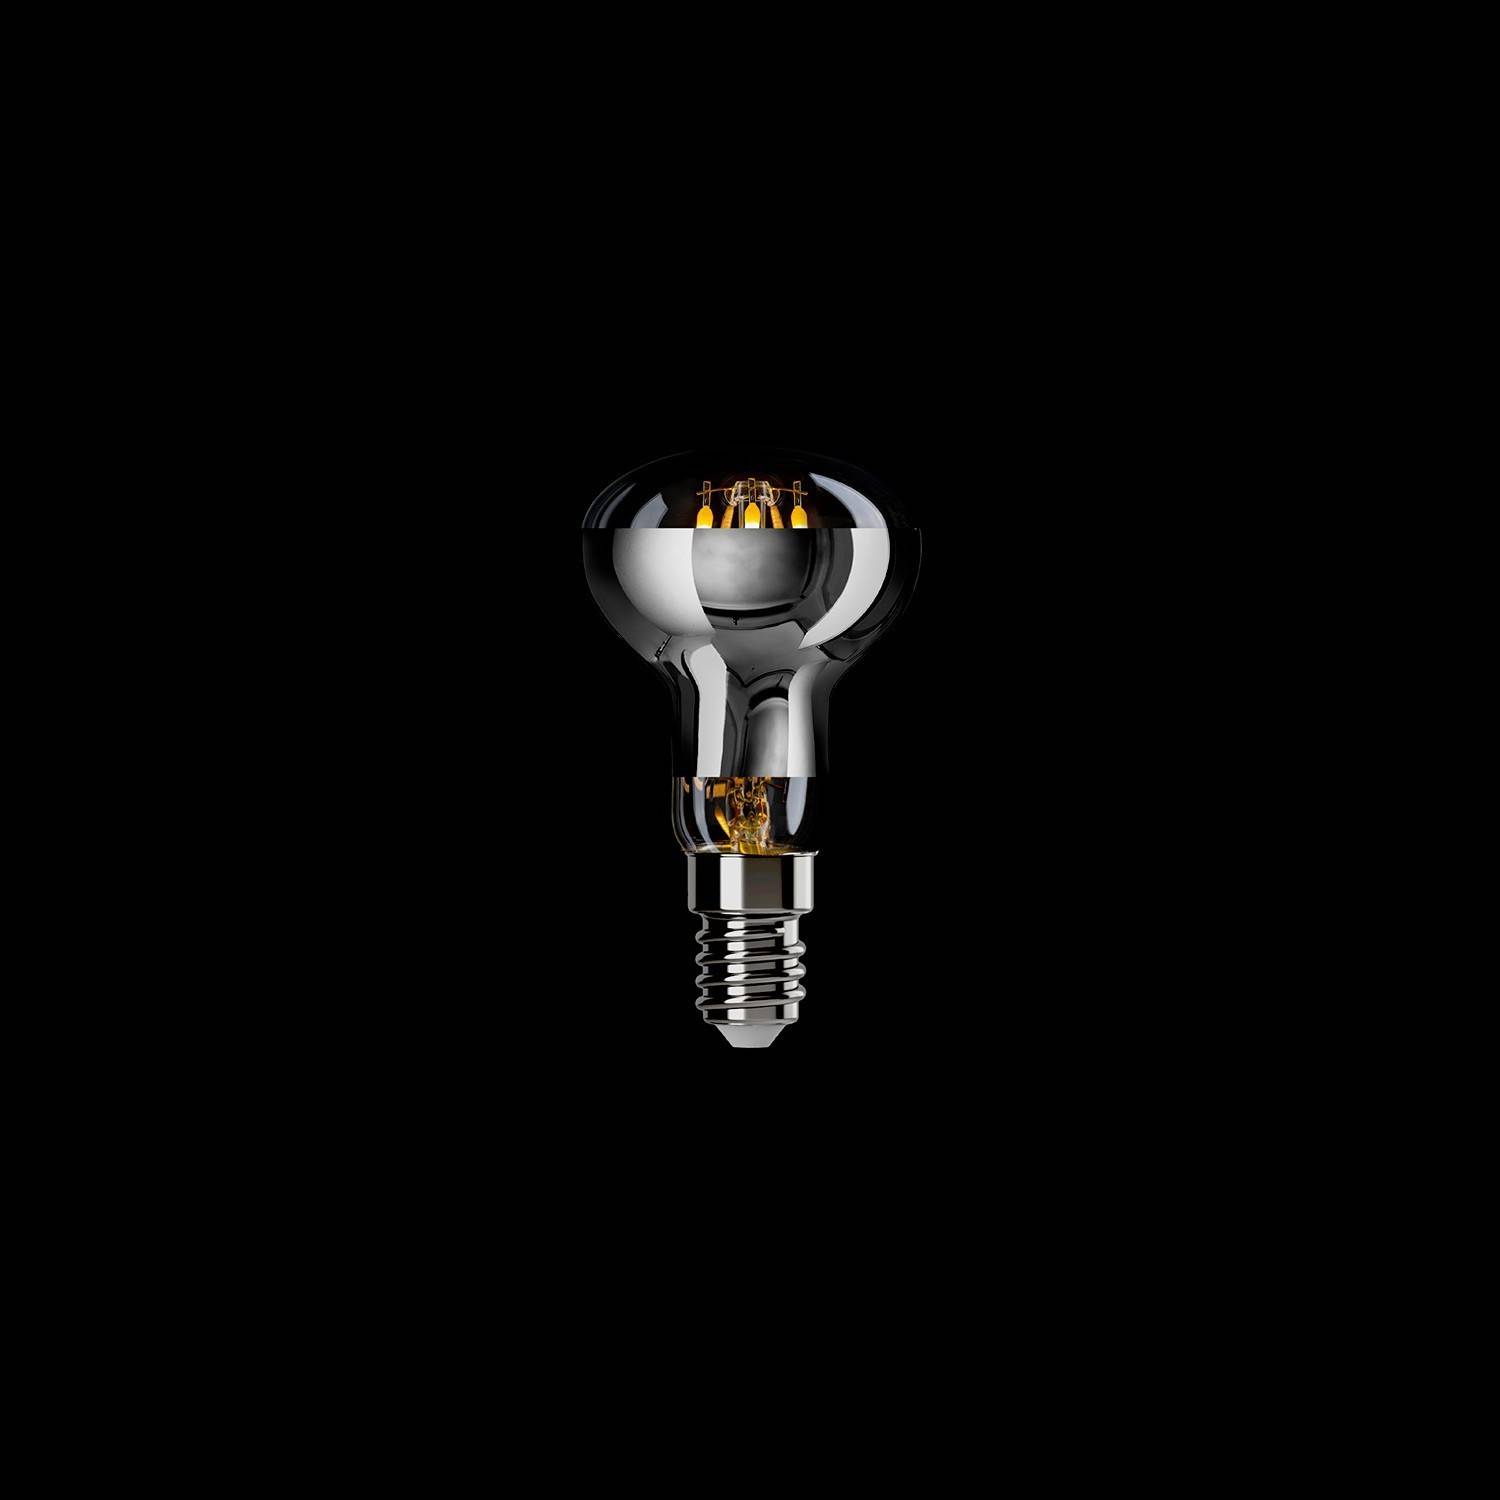 Bec LED pentru oglindă de culoare argintie, tip R50, 4W, 470Lm, soclu E14, 2700K, reglabil - A06